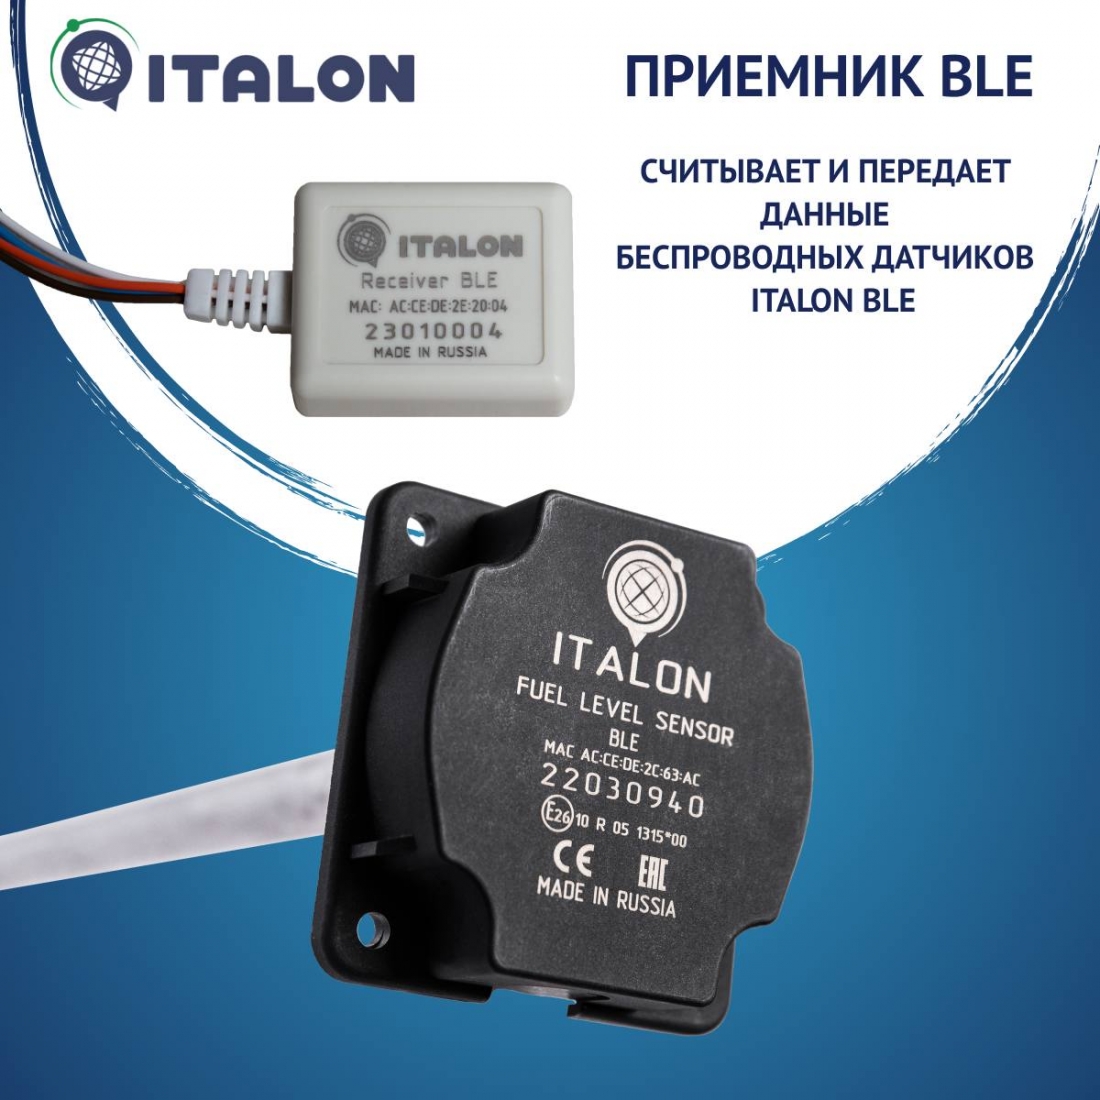 Передача данных с датчиков ITALON без проводов и кабелей!